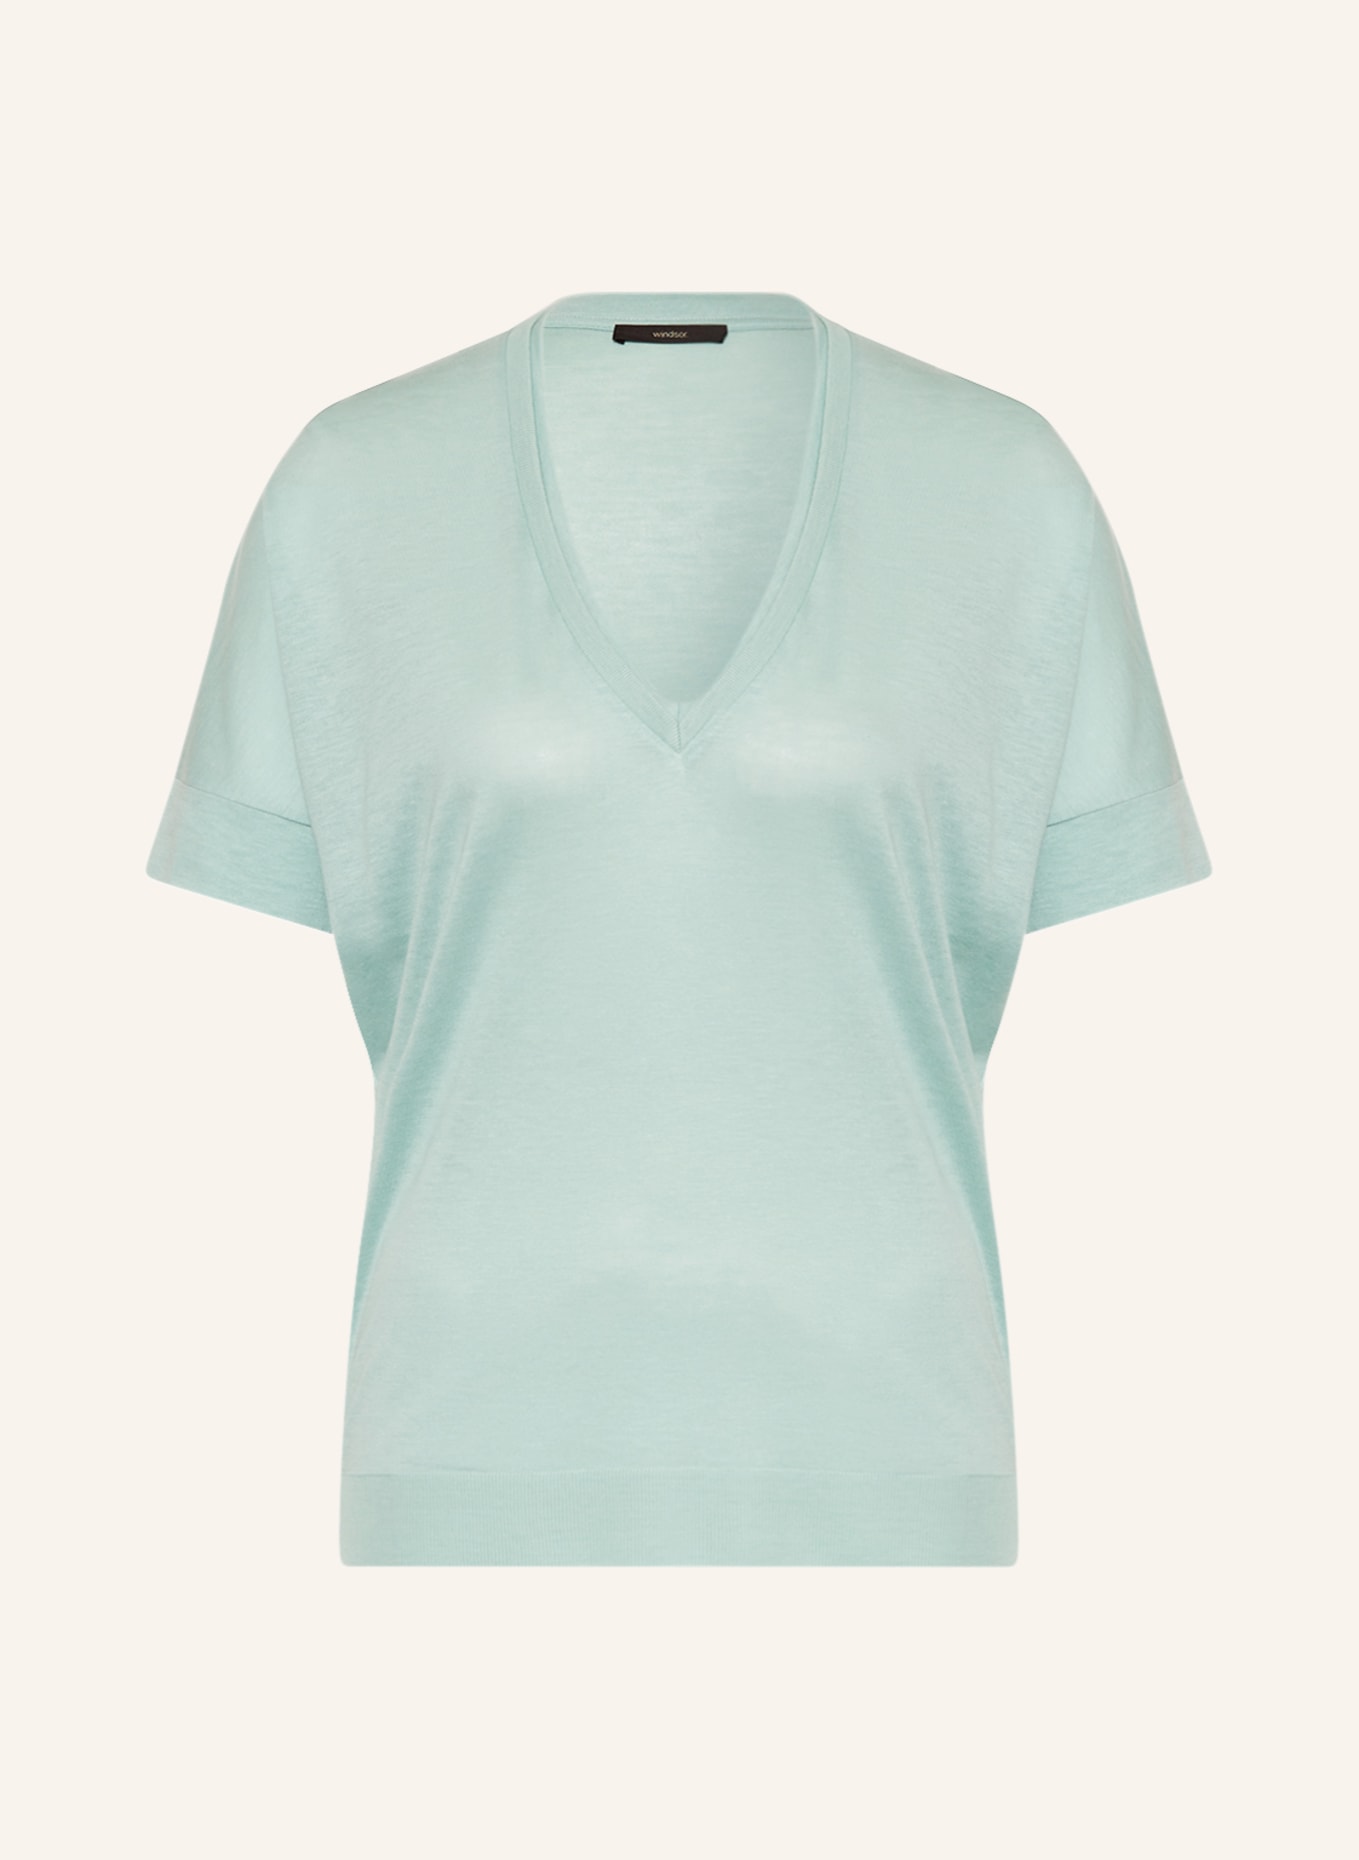 windsor. Knit shirt, Color: MINT (Image 1)